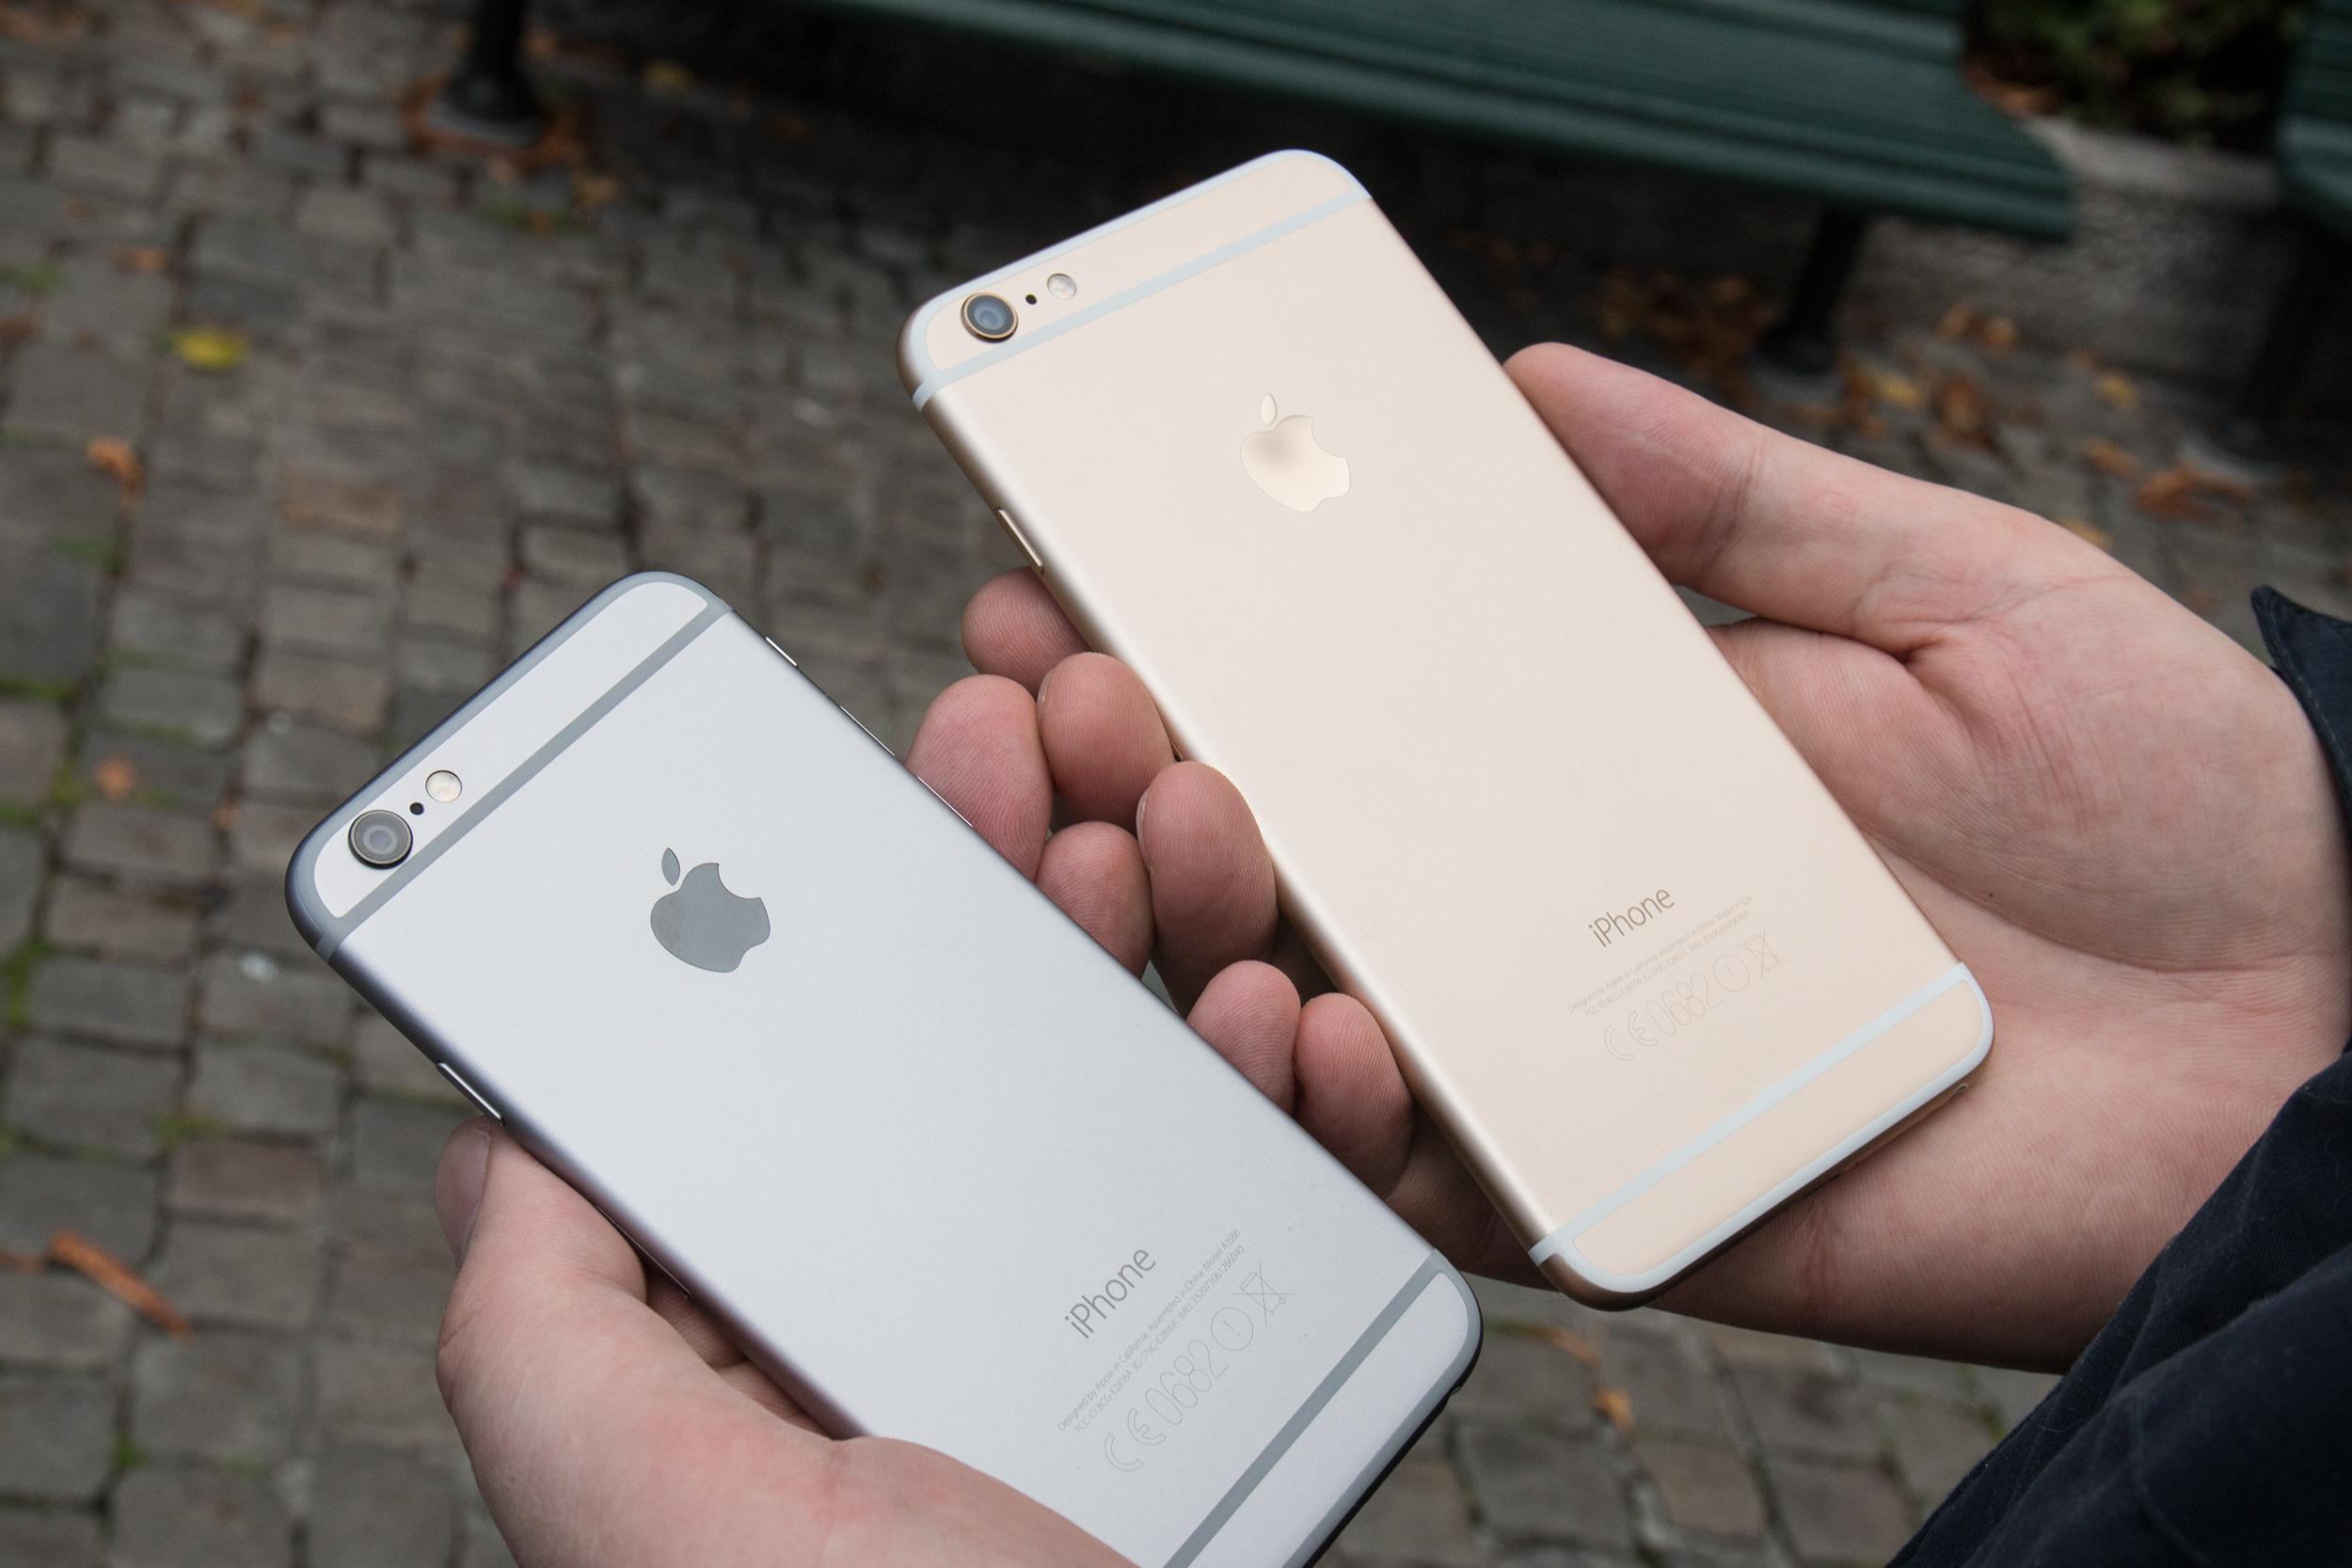 Med de to nye iPhone 6-modellene øket Apple skjermstørrelsen, og salget eksploderte. Foto: Jørgen Elton Nilsen, Tek.no